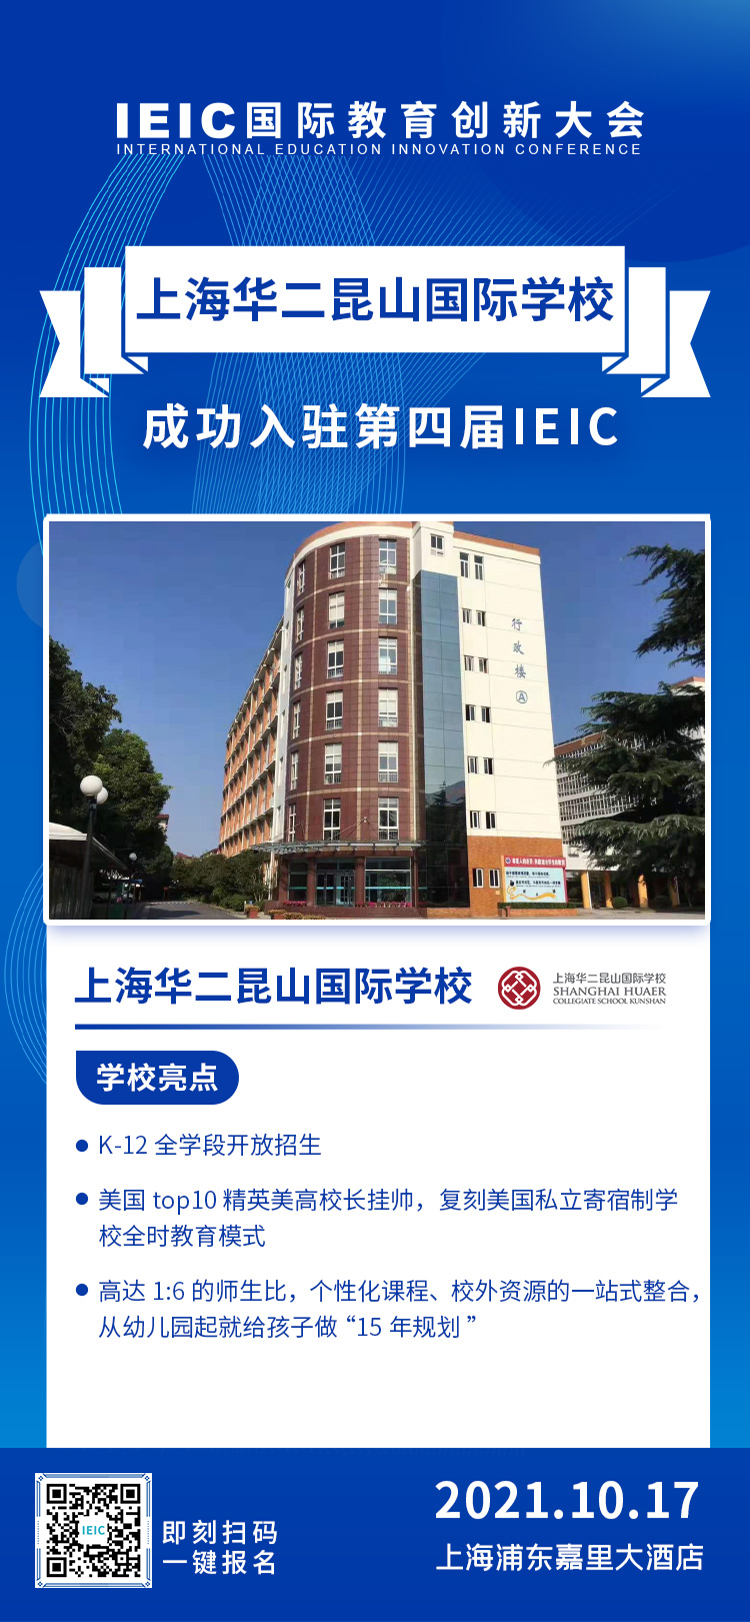 上海华二昆山国际学校|入驻参展2021年远播第四届IEIC国际教育创新大会